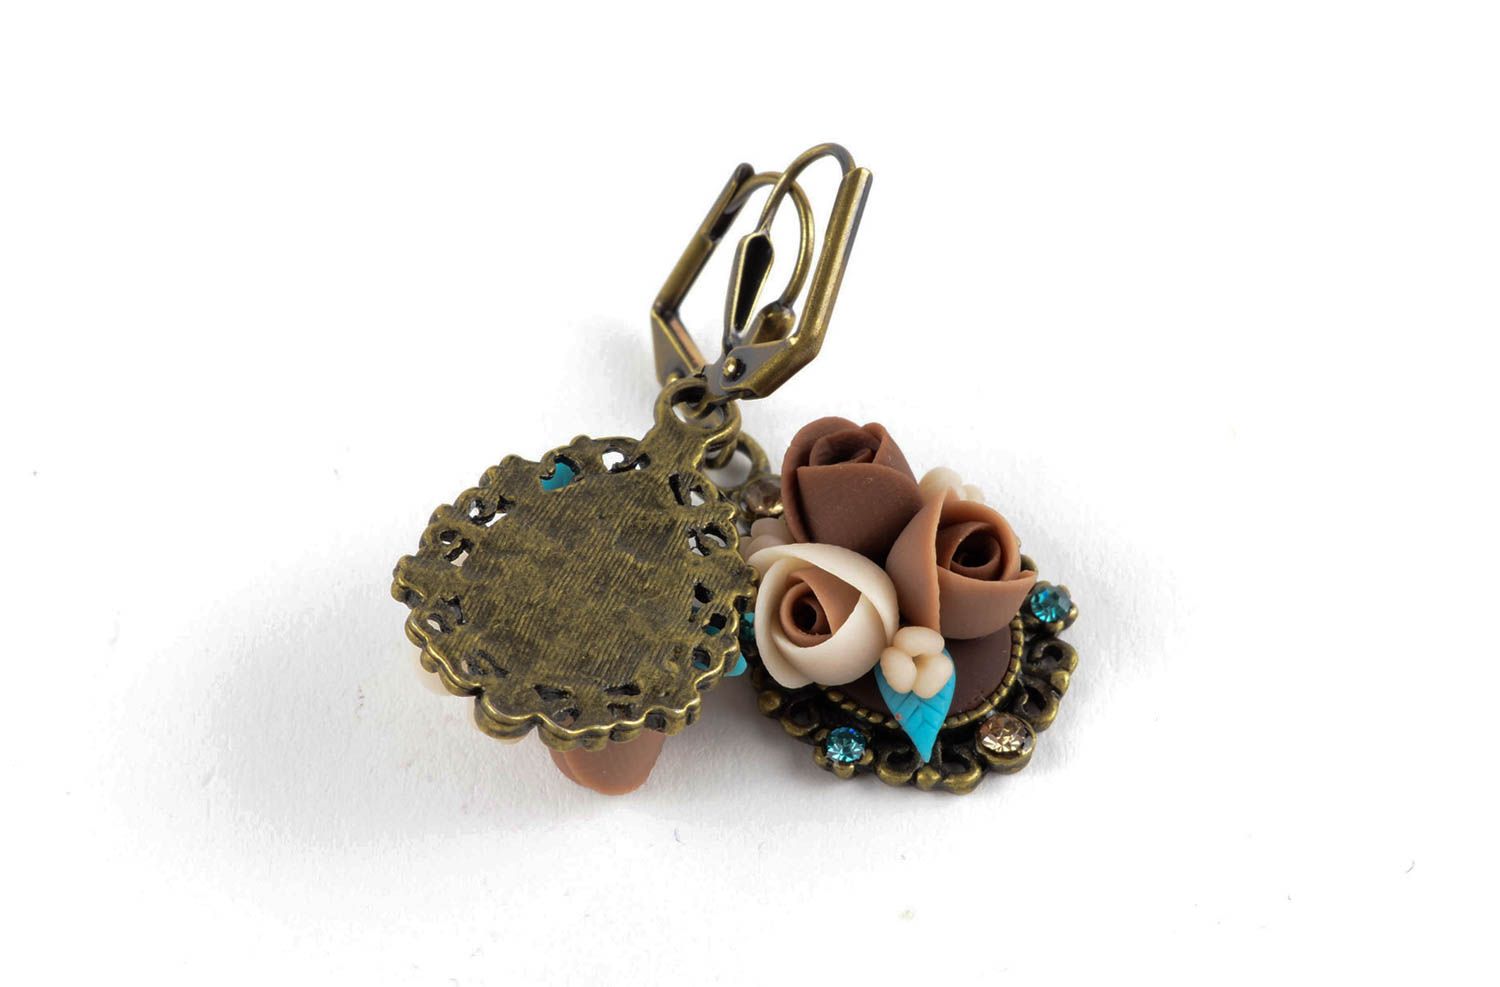 Plastic earrings flower earrings molded earrings with charms handmade goods photo 2